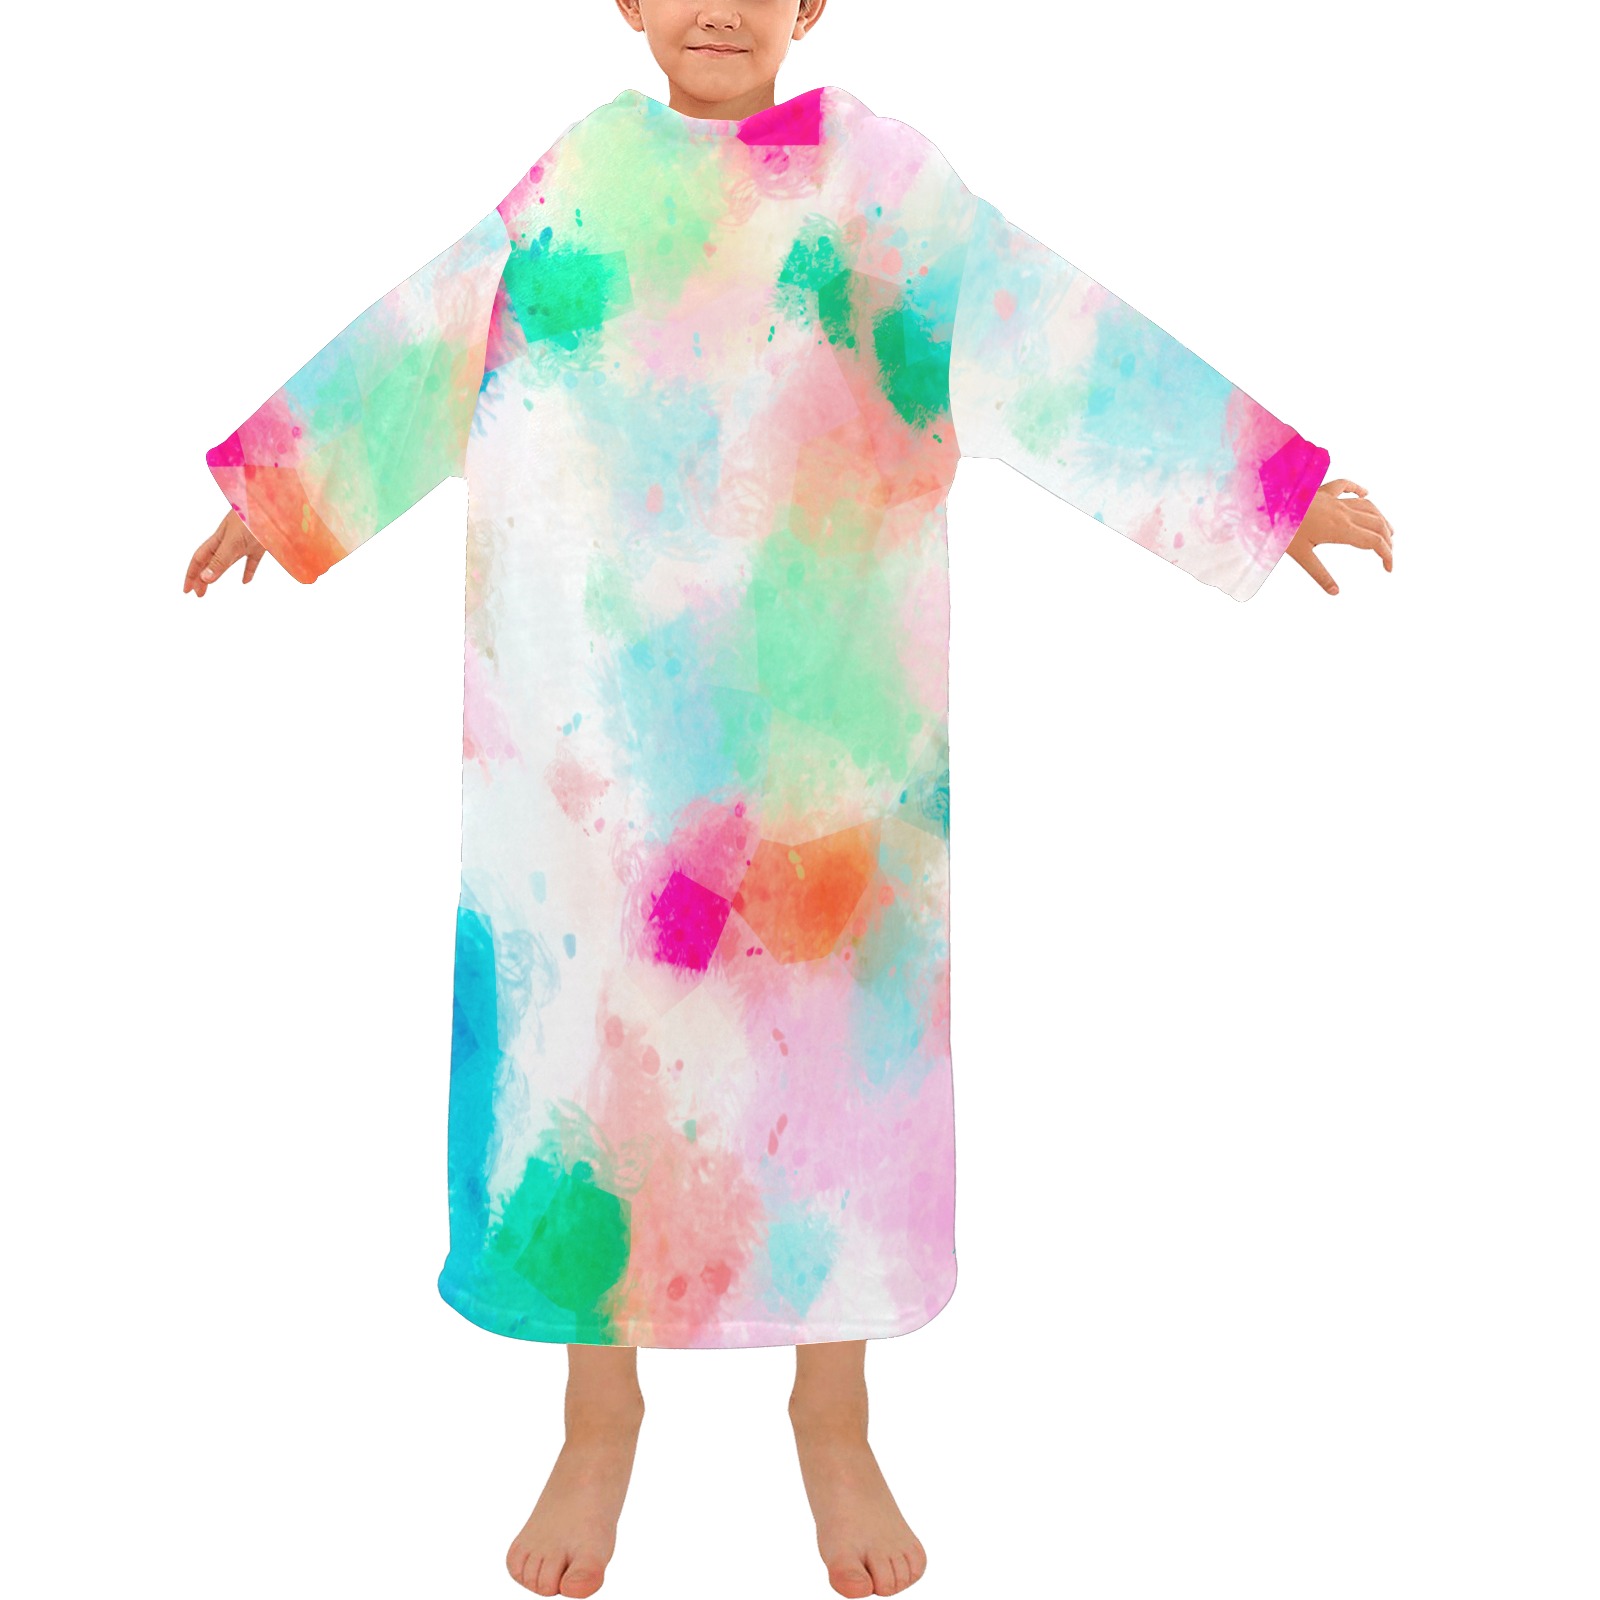 painteddreams Blanket Robe with Sleeves for Kids